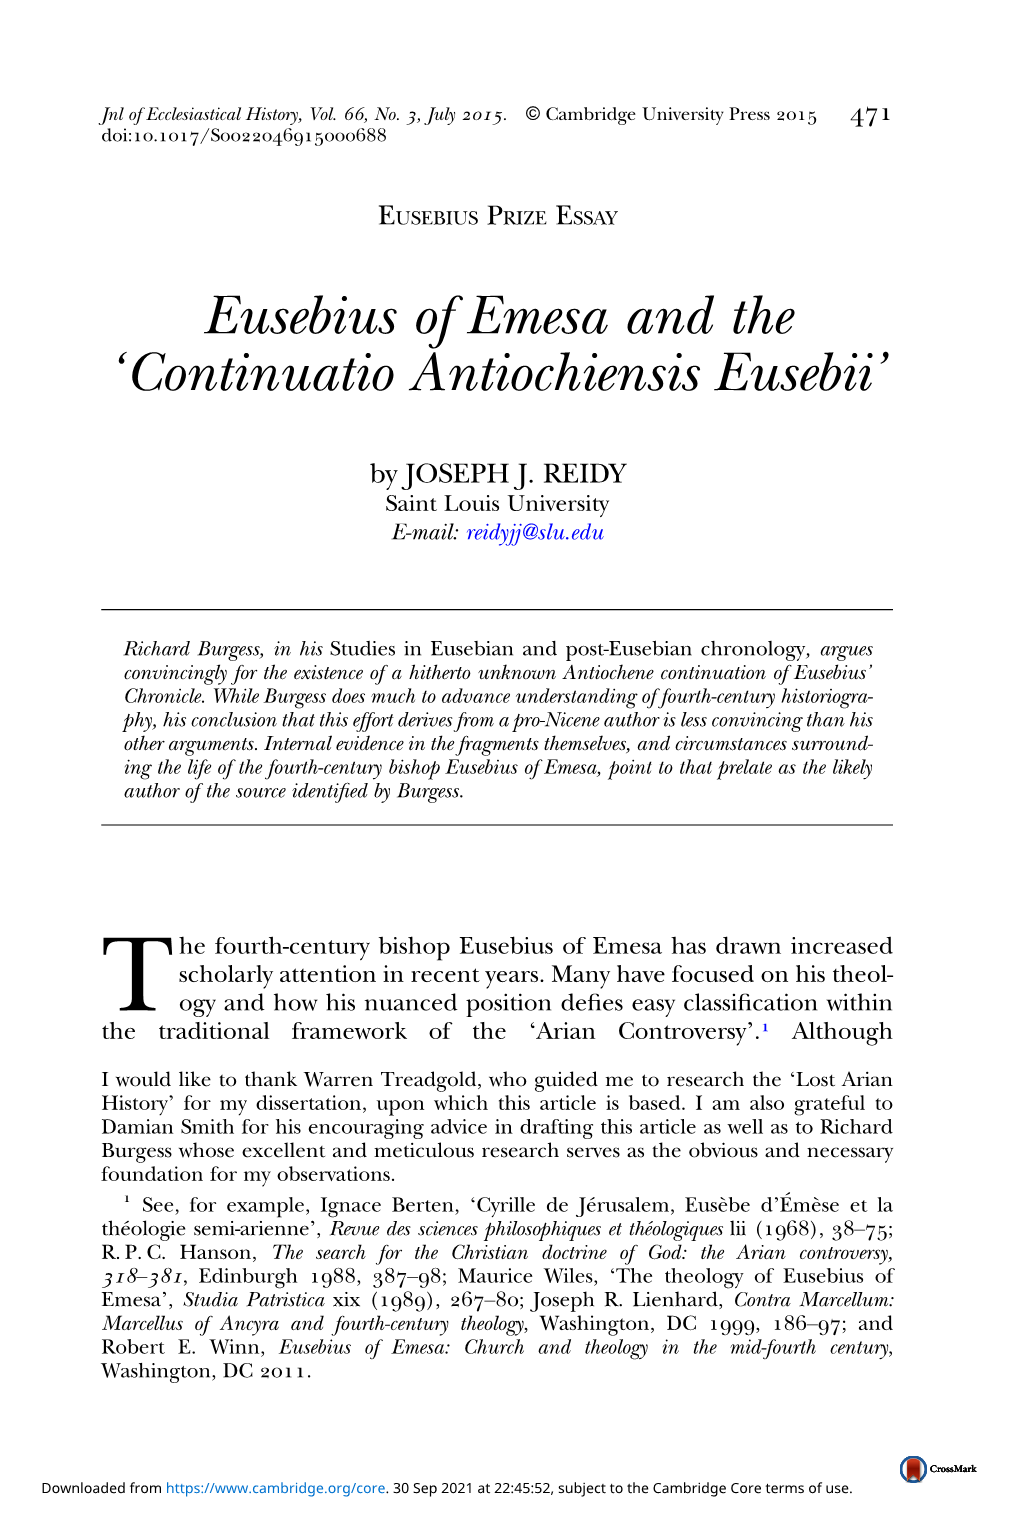 Eusebius of Emesa and the ‘Continuatio Antiochiensis Eusebii’